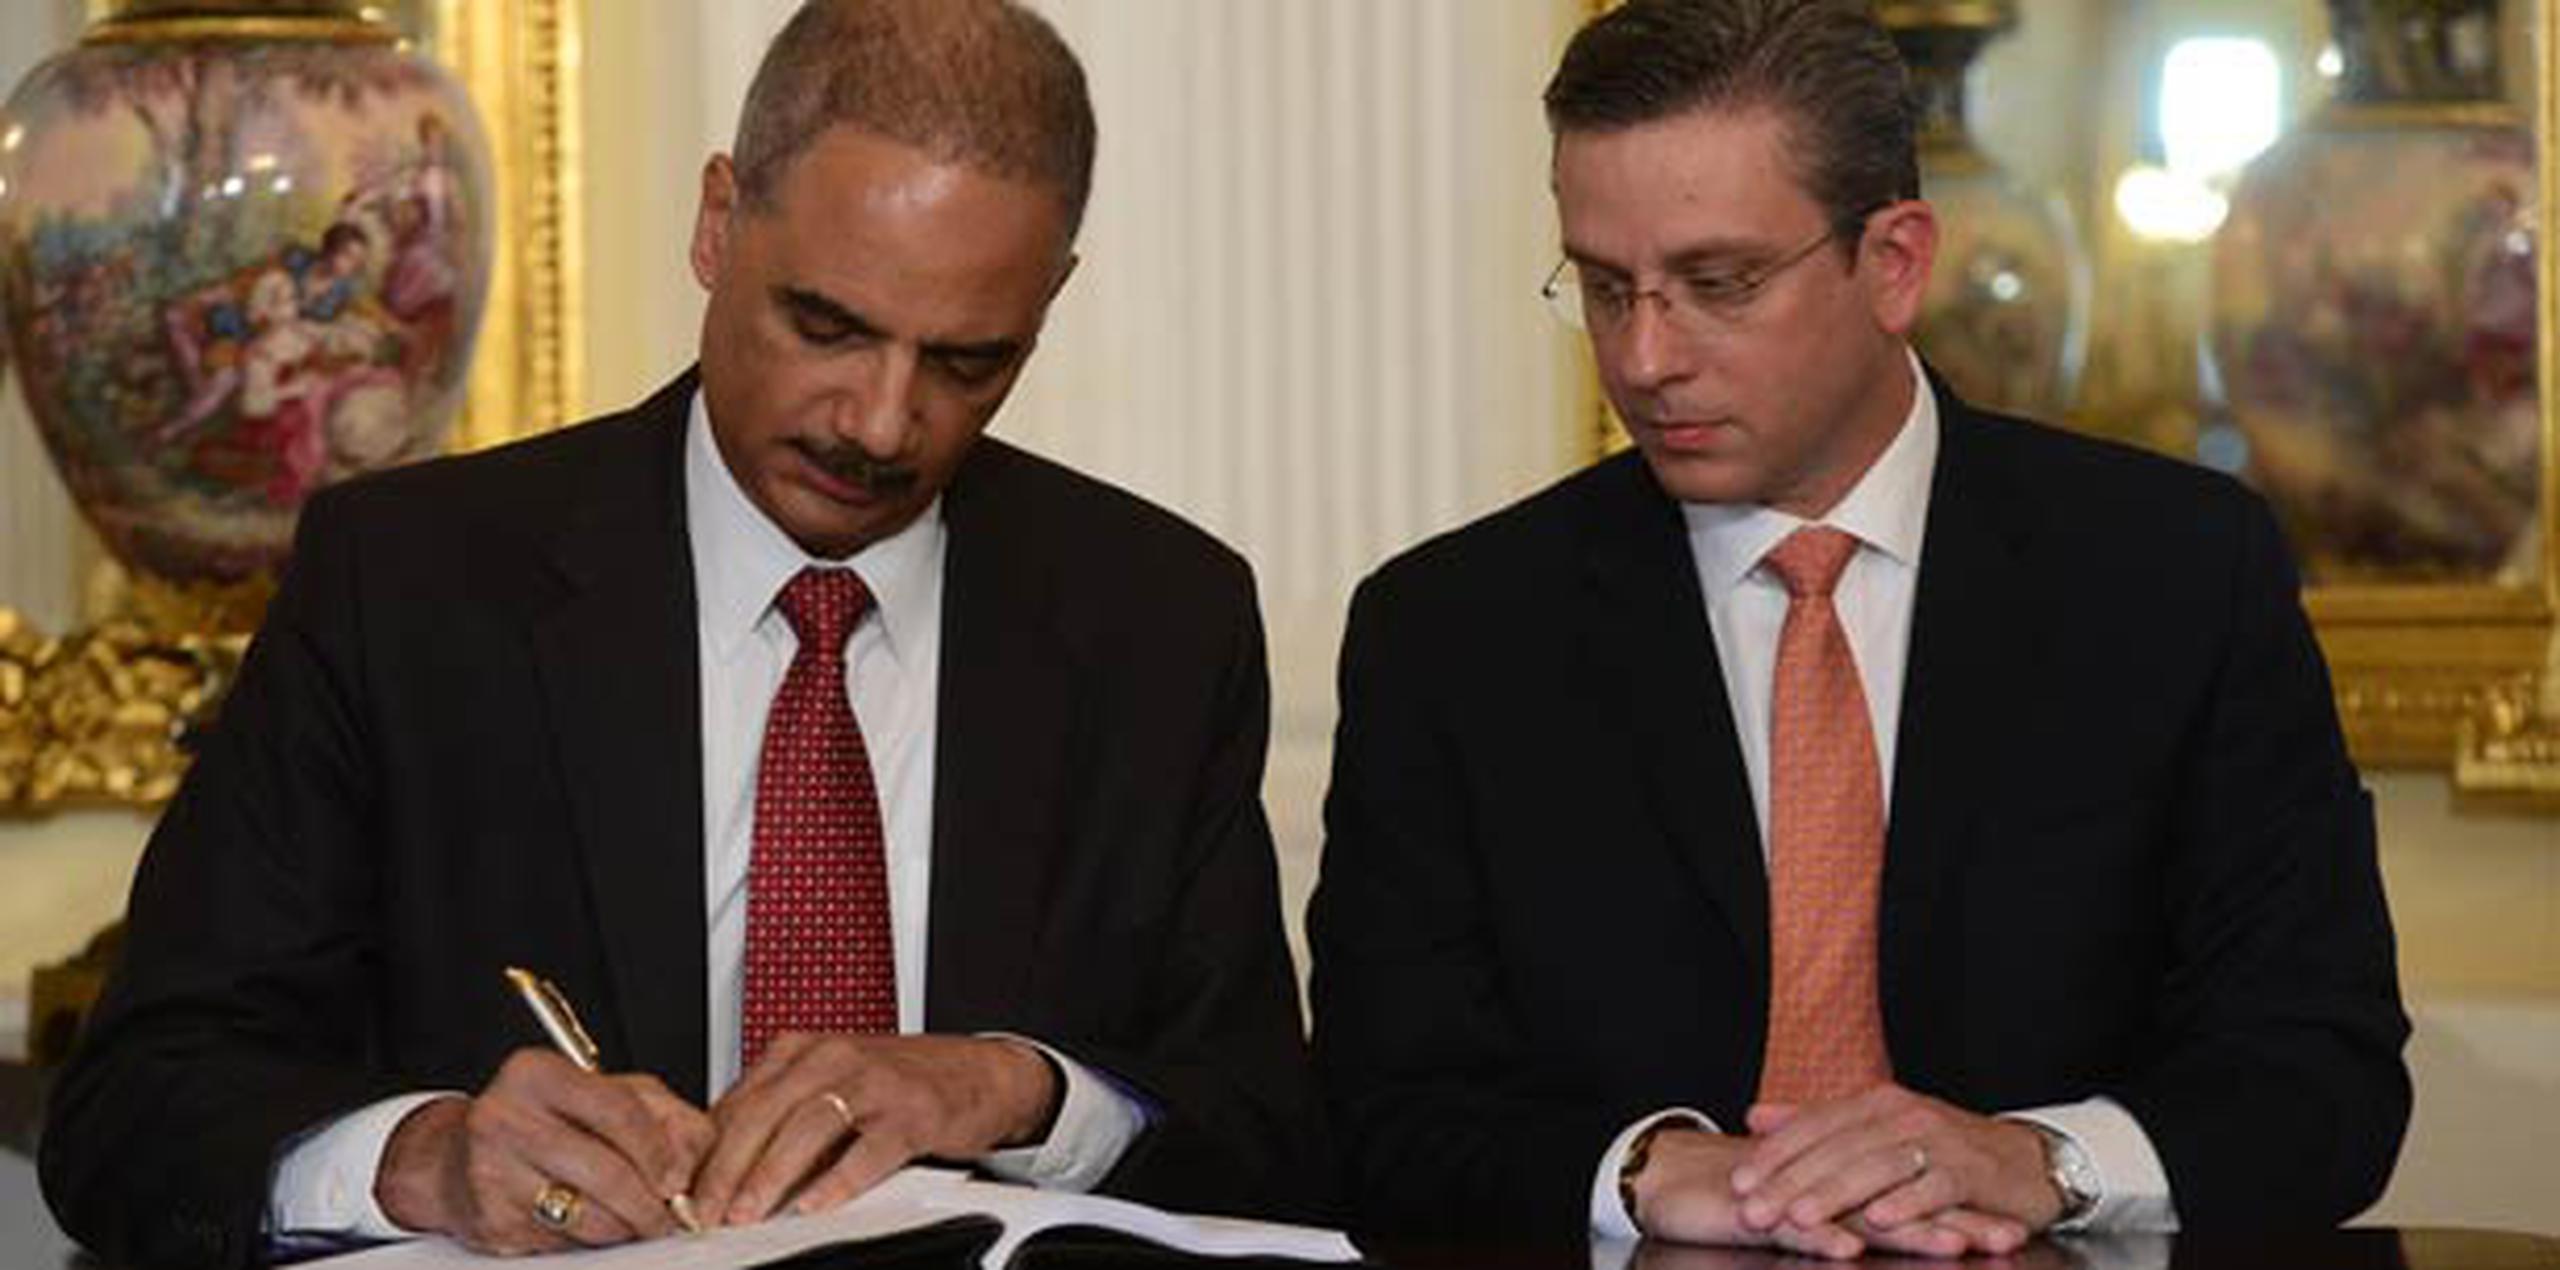 El Departamento de Justicia de los Estados Unidos firmó este miércoles un acuerdo con el Gobierno de Puerto Rico para impulsar una reforma en la Policía local. (carlos.giusti@gfrmedia.com)